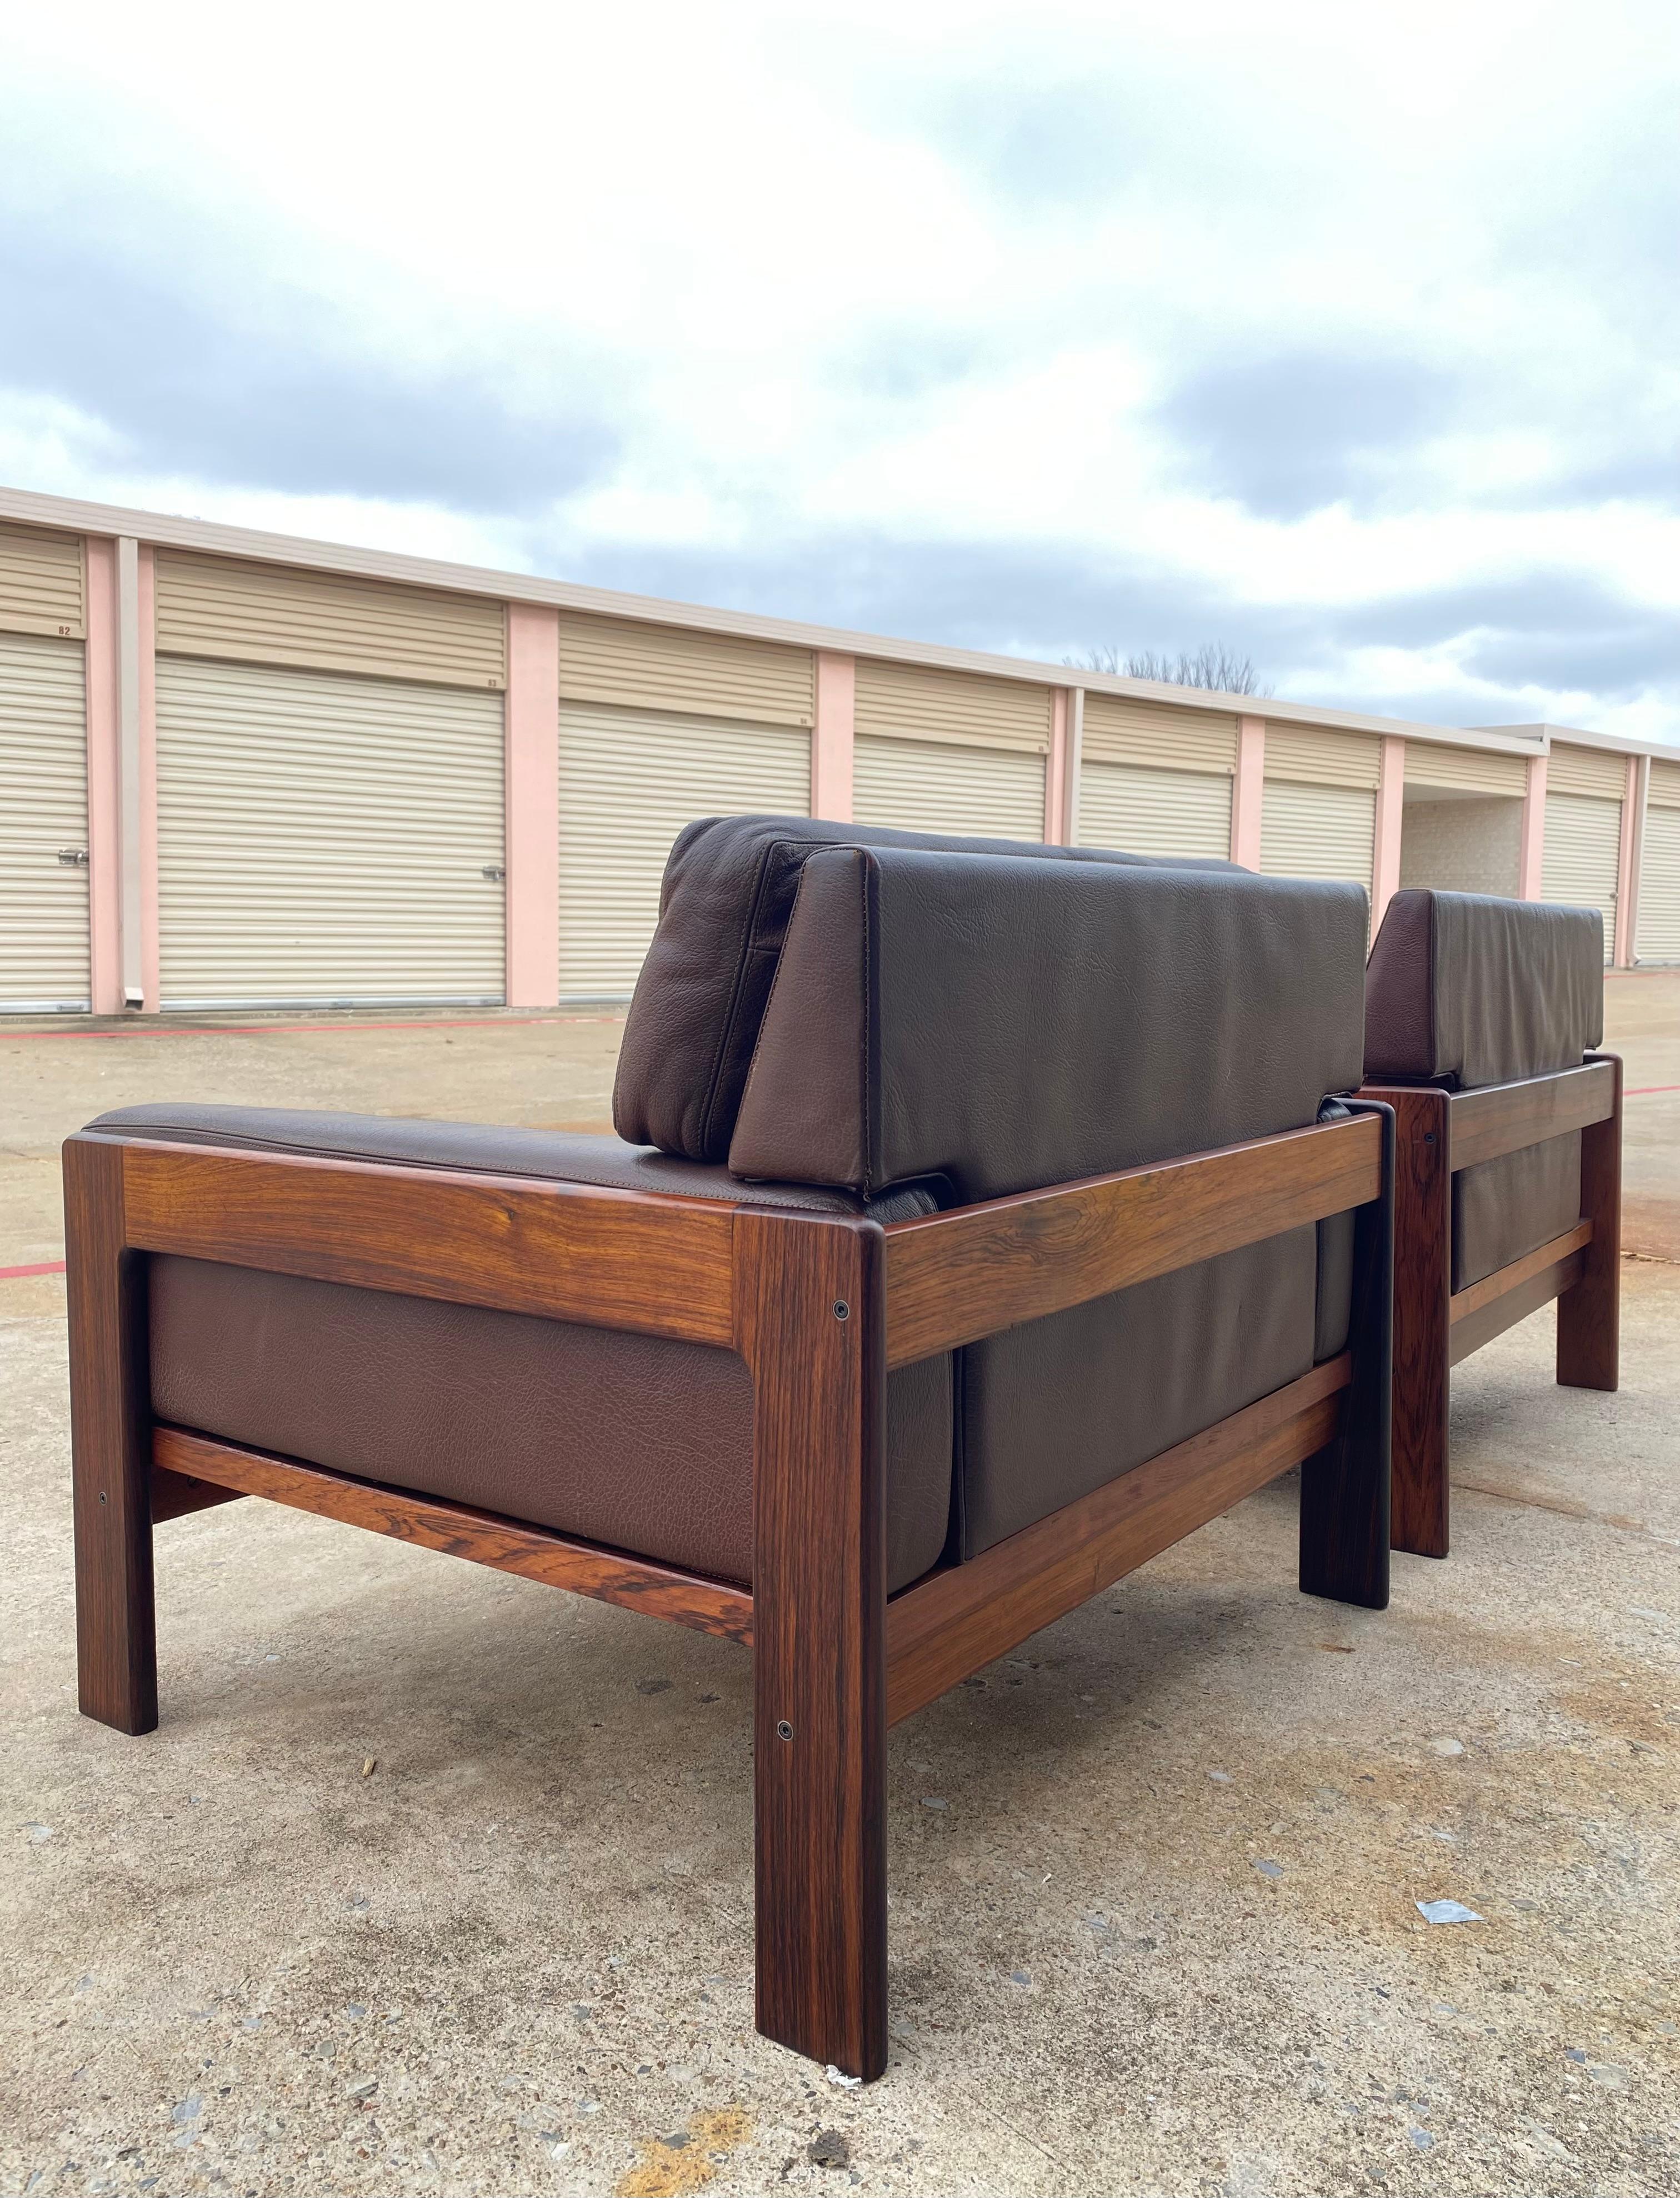 Dänische Moderne Paar Lounge-Sessel in original braunem Kiesel-Leder und Palisanderholz. Entworfen von Henry Walter (H.W.) Klein für Bramin, 1970er Jahre

Ursprünglich bekannt als N.A. Jørgensen, dänischer Möbelhersteller Bramin wurde in Bramming,